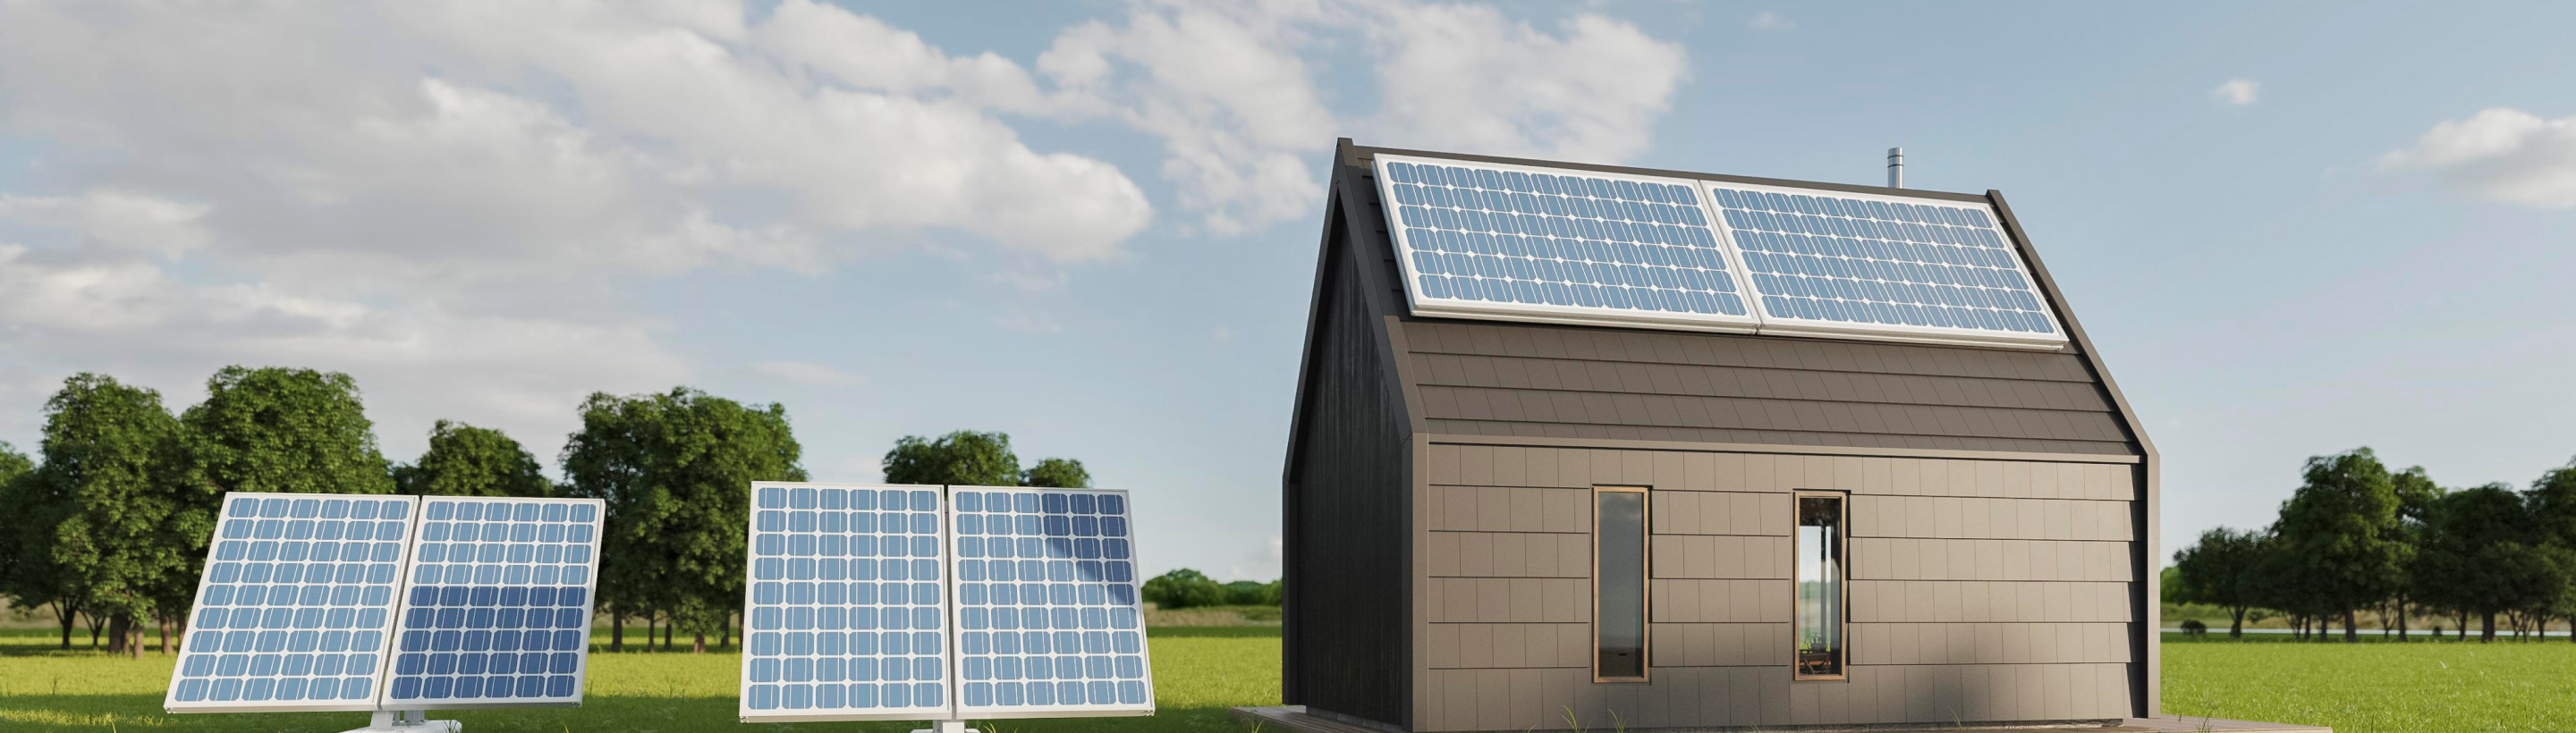 Solar powered house